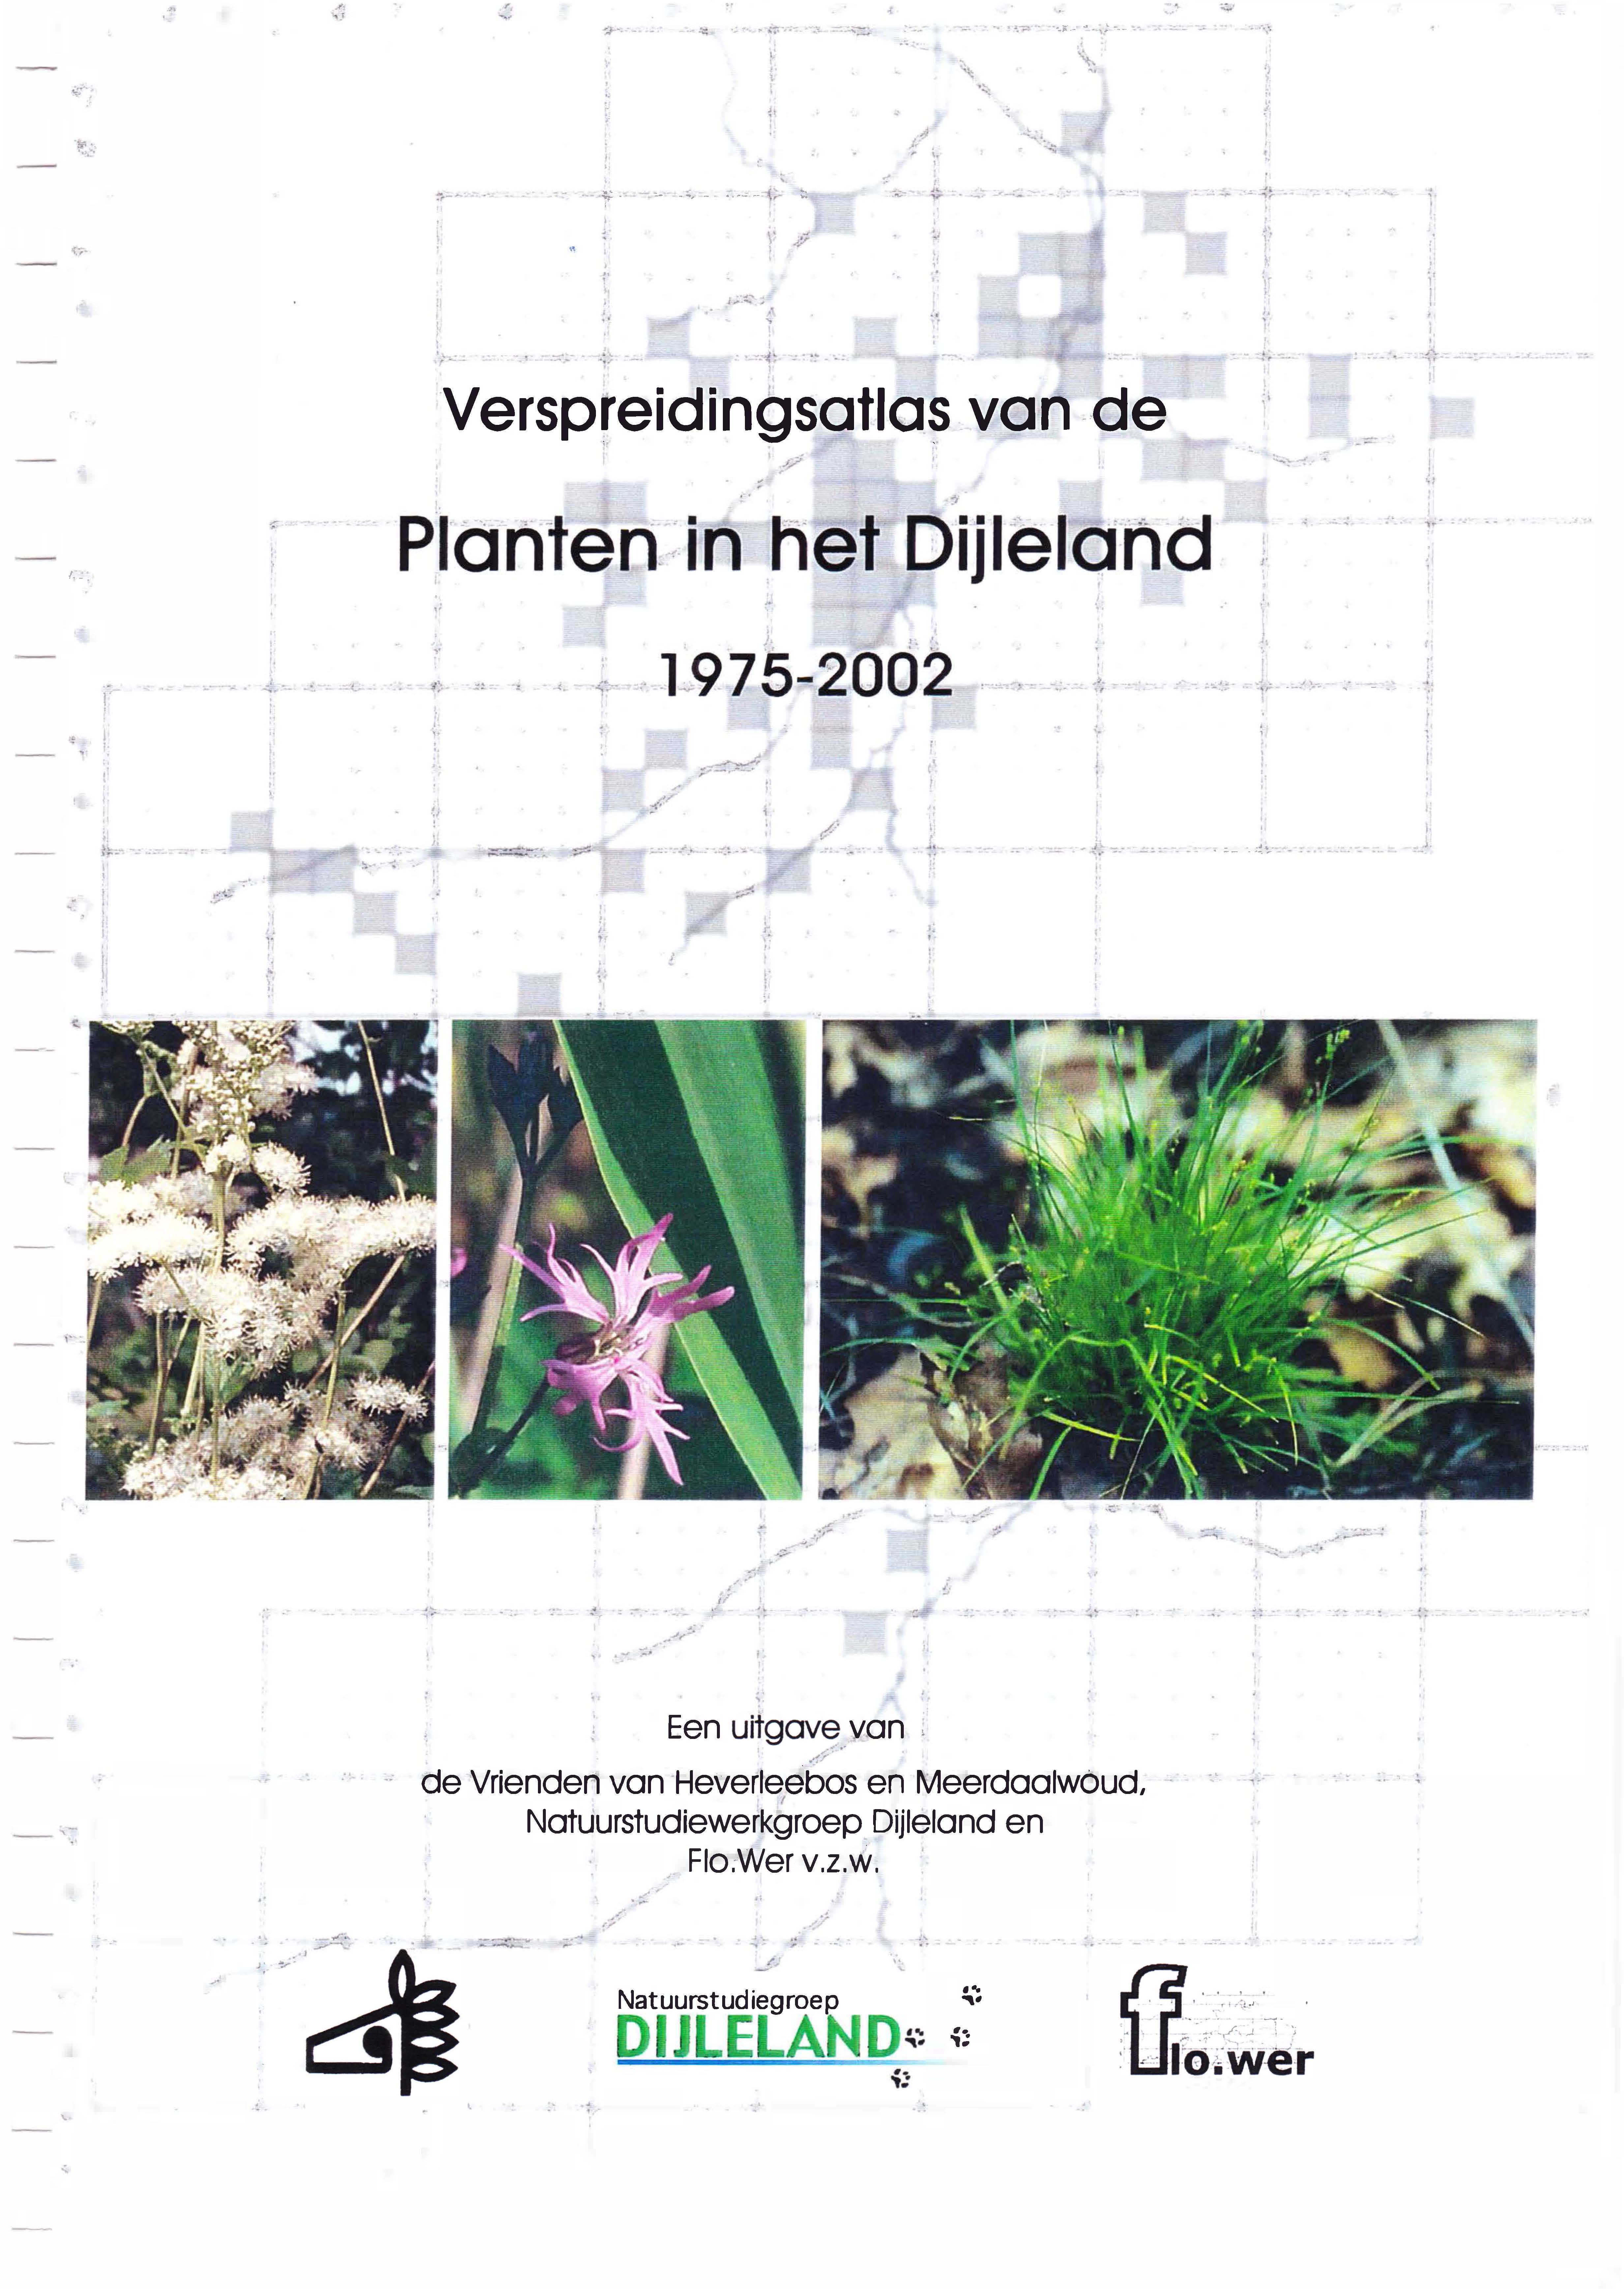 Stuckens, J., Vercoutere, B. (2002). Verspreidingsatlas van de Planten in het Dijleland (1975-2002).